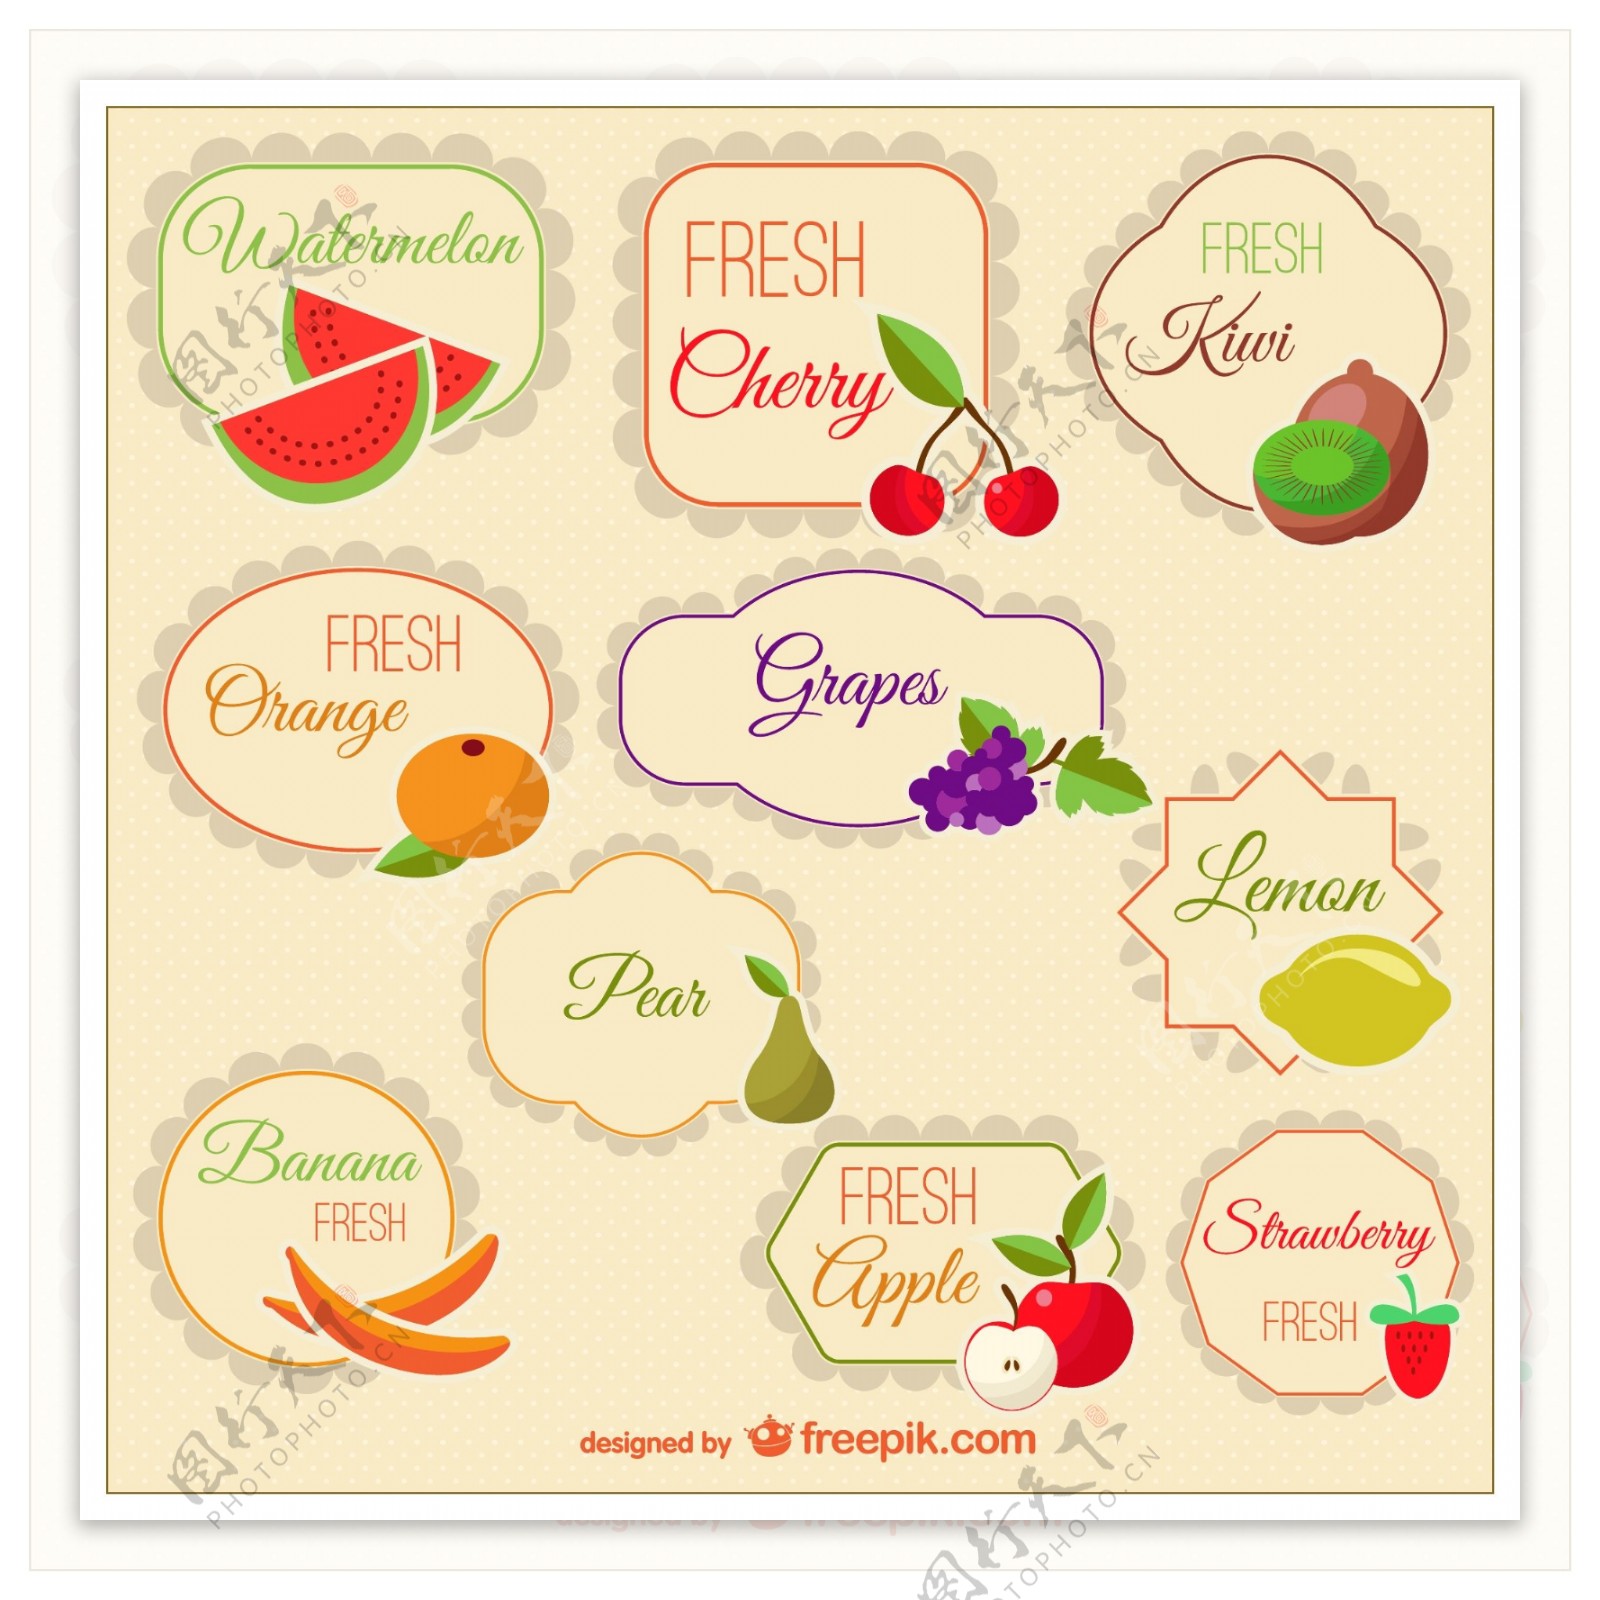 10款彩色水果标签矢量素材